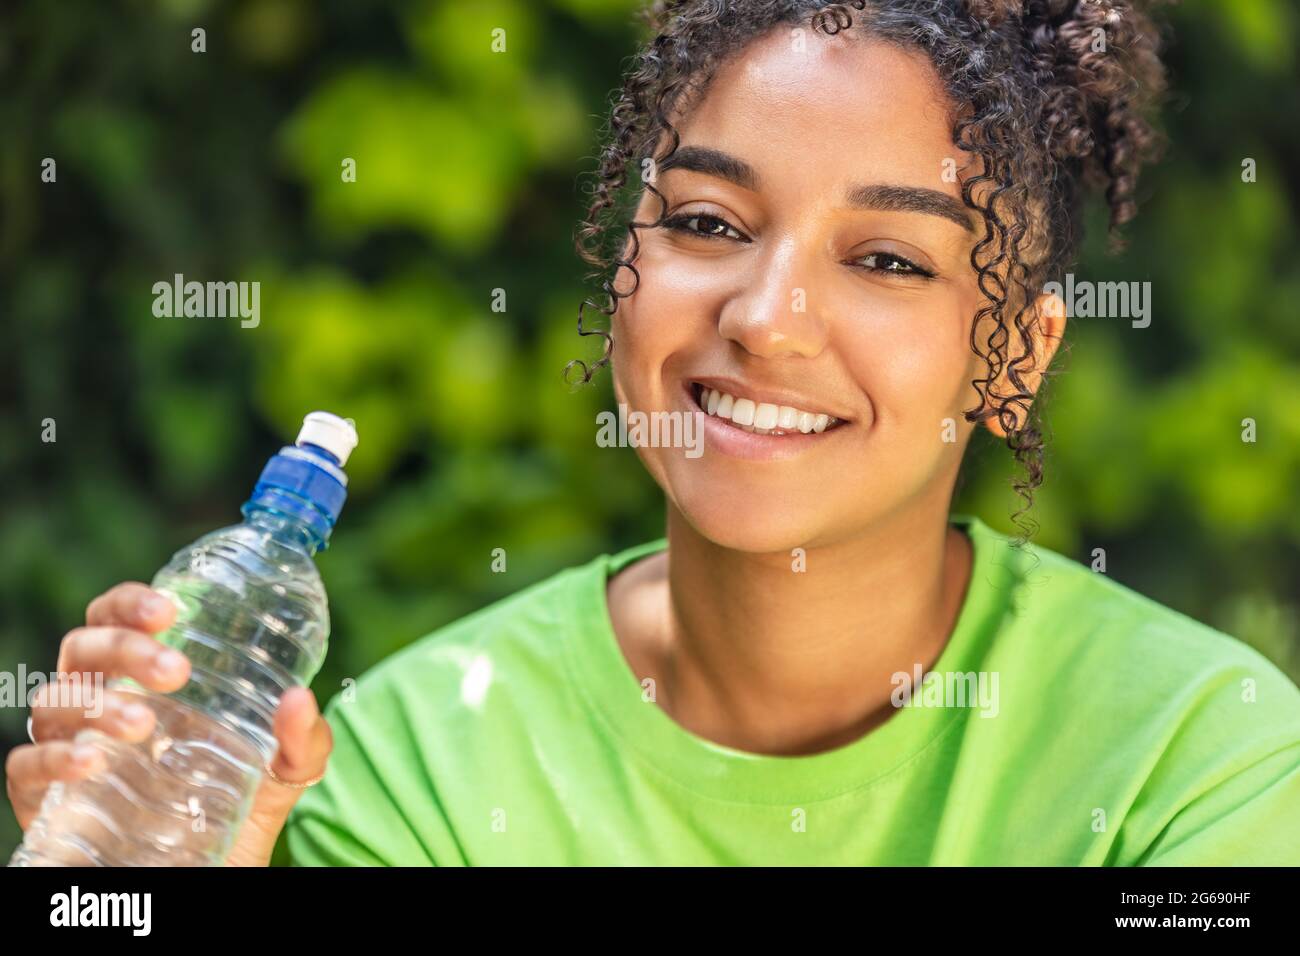 Ritratto all'aperto di bella felice gara mista Africana americana ragazza adolescente donna giovane con denti perfetti bere acqua da una bottiglia weari Foto Stock